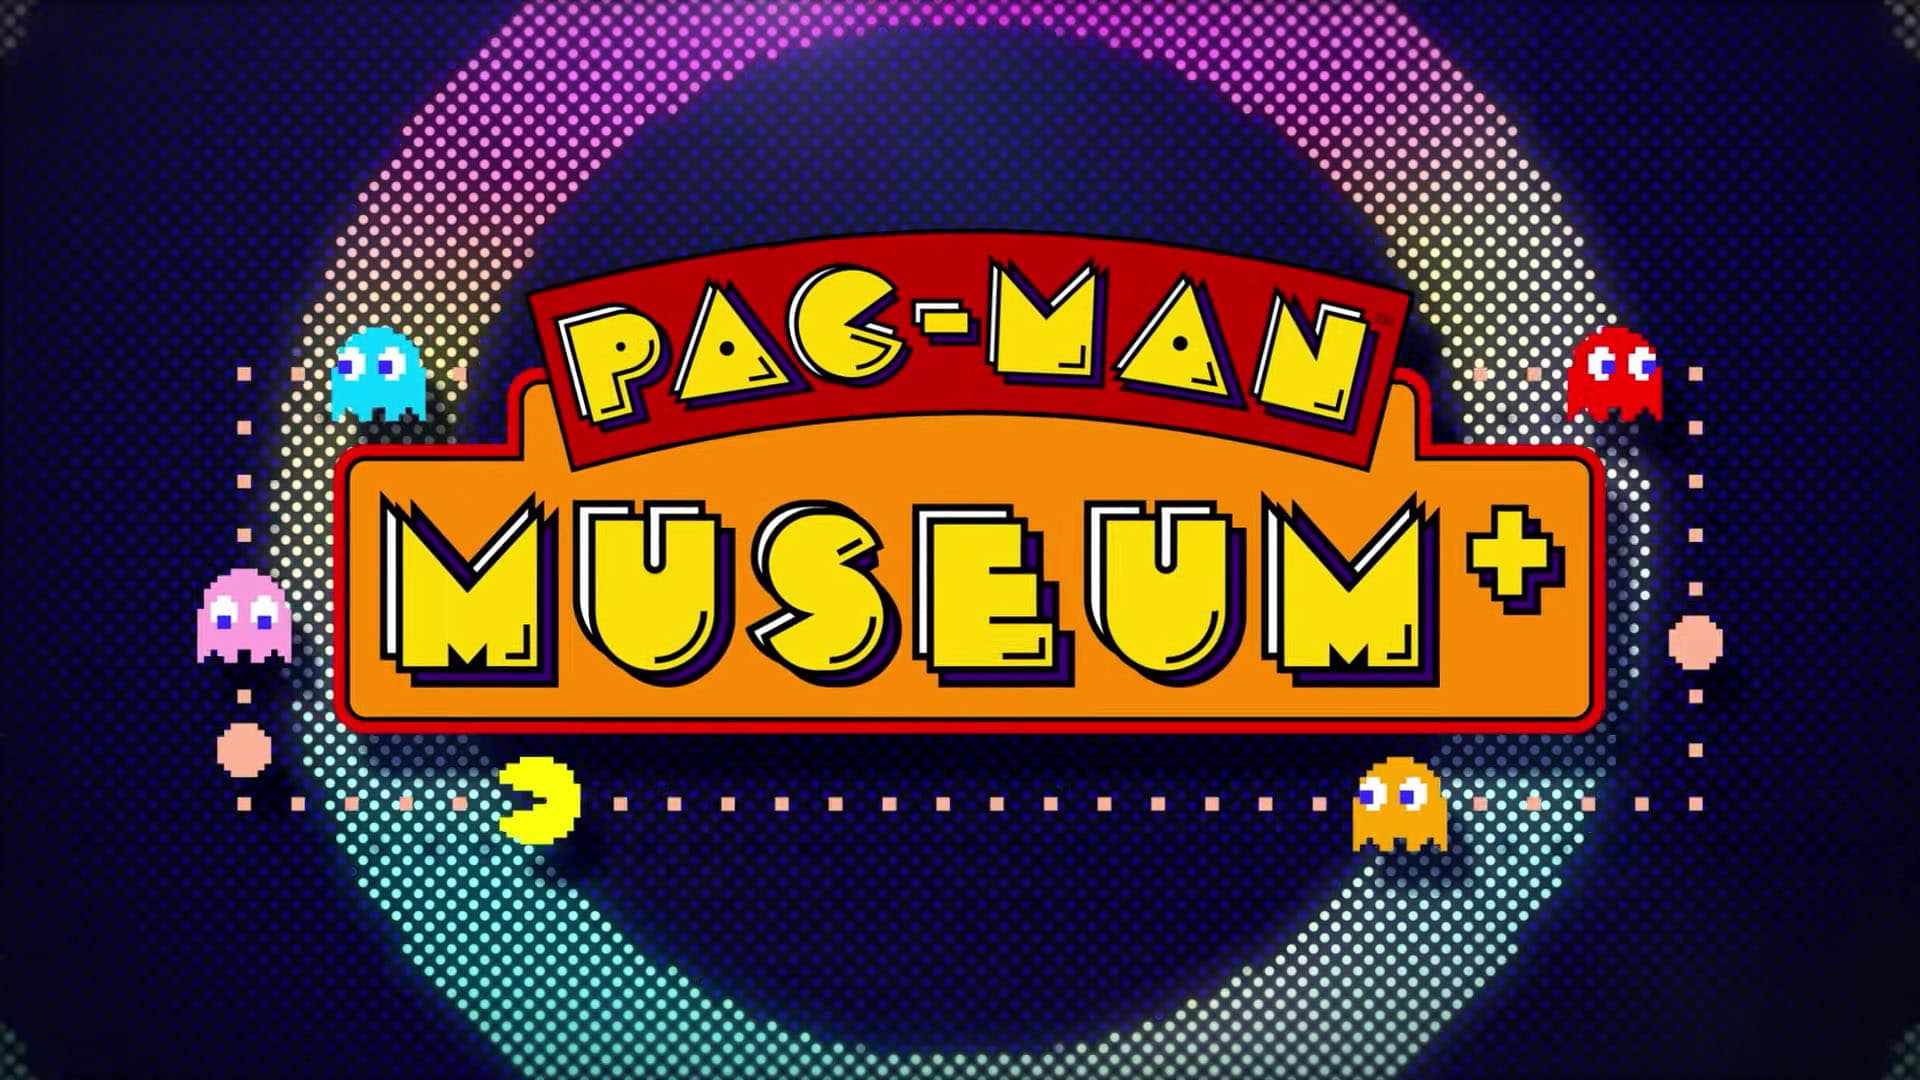 PAC-MAN MUSEUM+, Bandai Namco, GamersRD